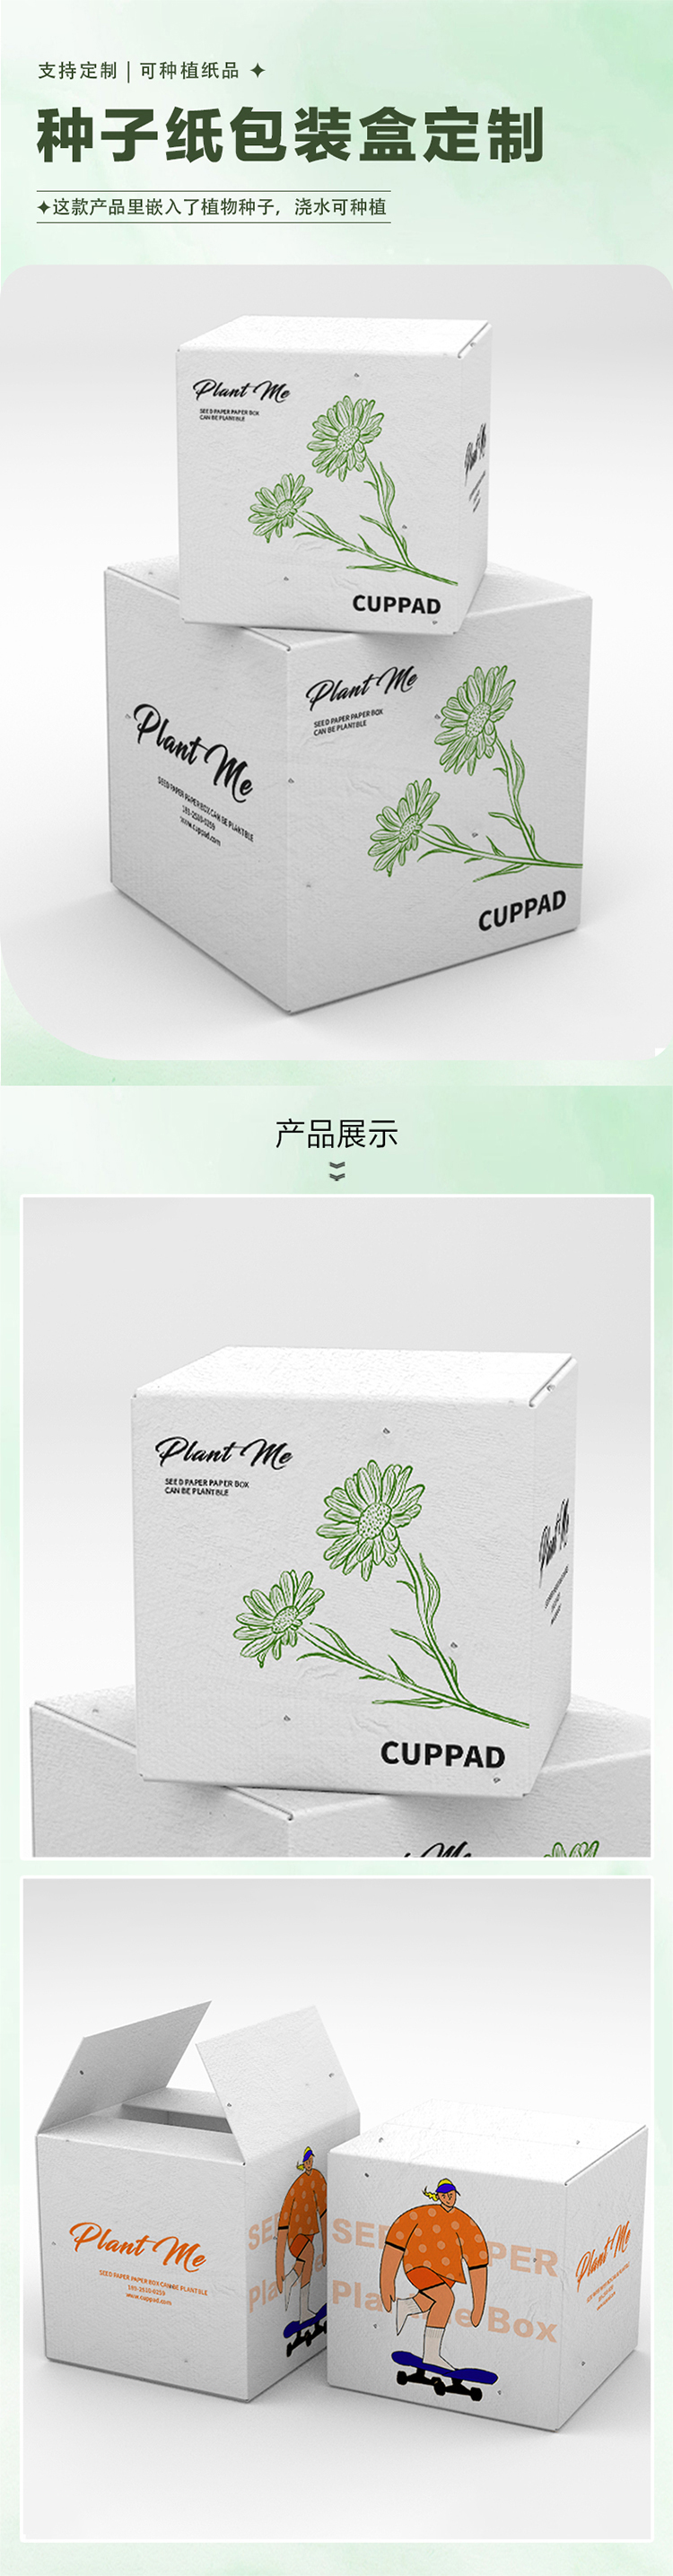 种子纸纸盒-中文-有腾.jpg